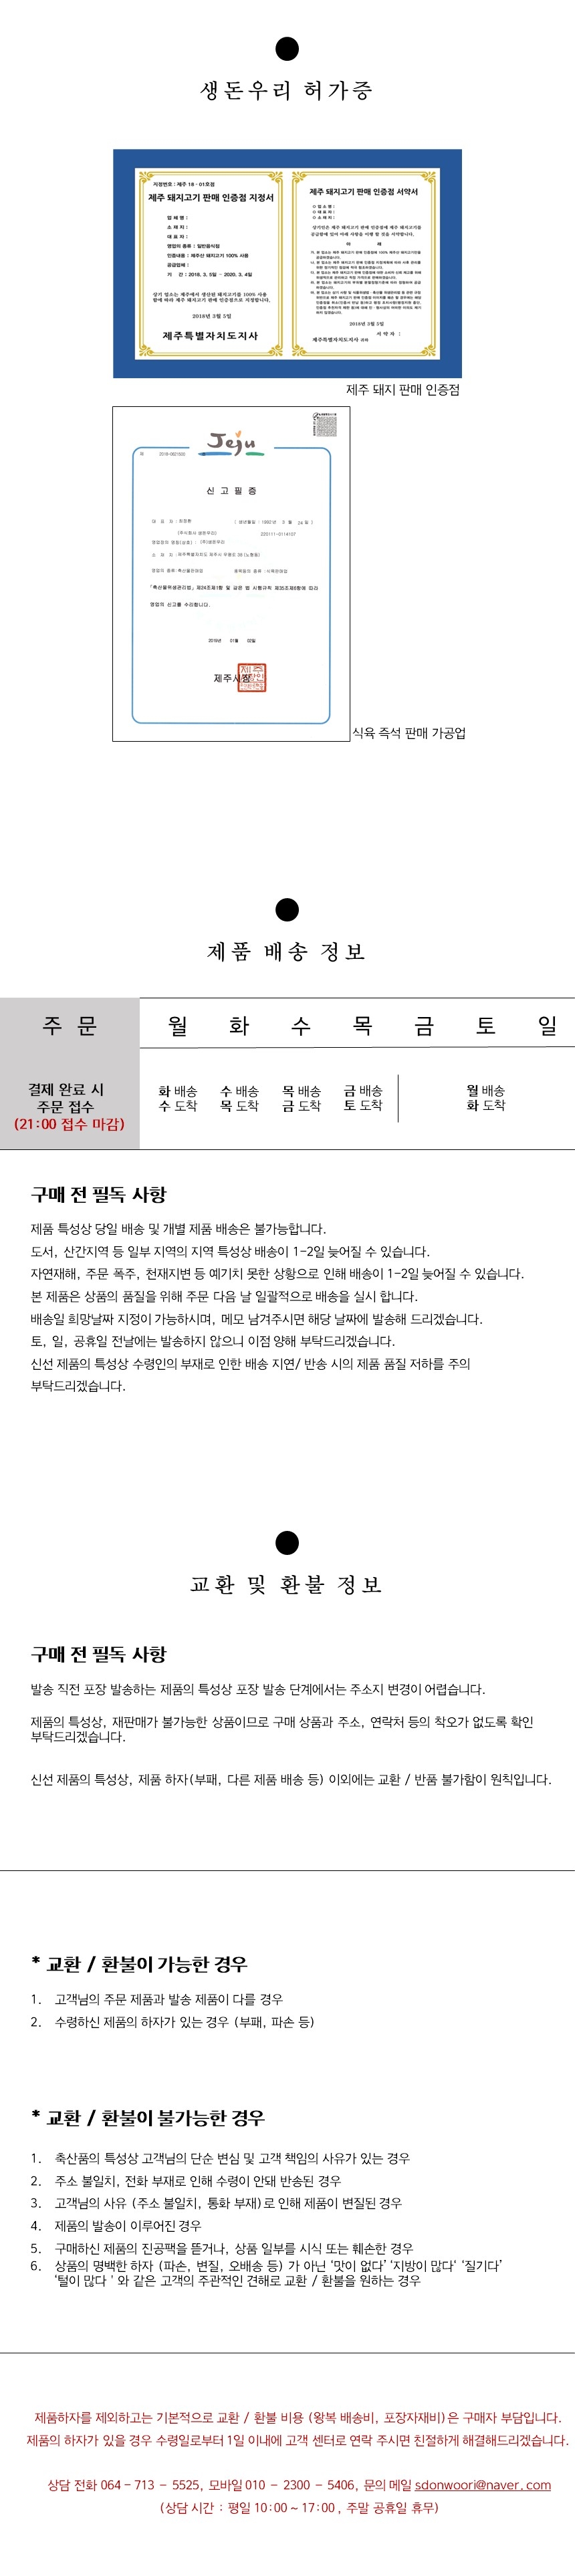 [냉장]30숙성 제주 흑돼지 목살 500g 상세